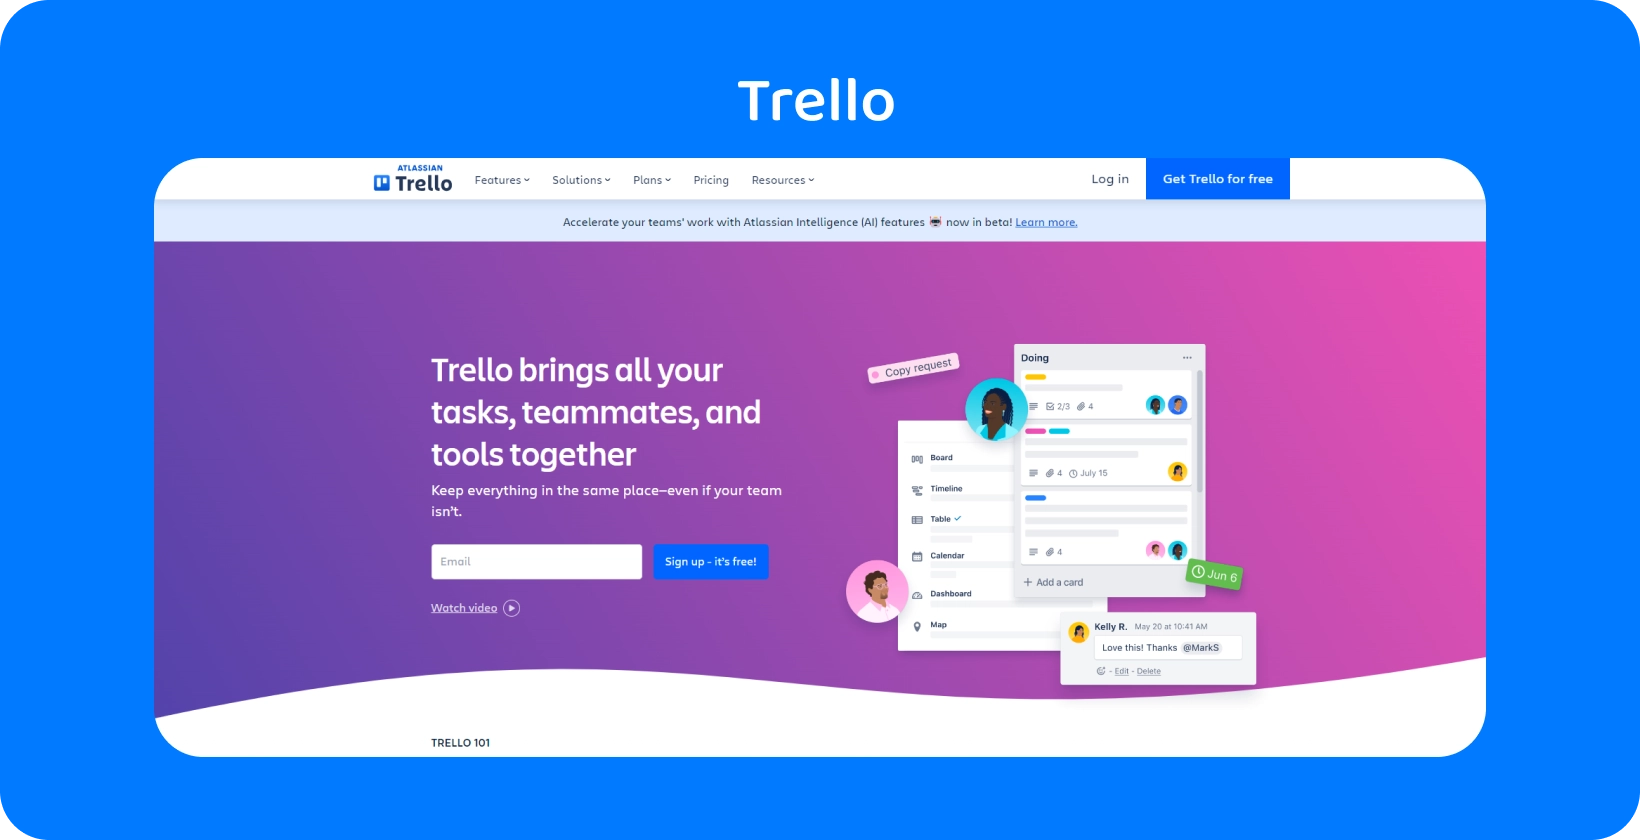 Інтерфейс Trello, що показує організацію завдань, ідеально підходить для юристів для управління матеріалами справи та спільної роботи.